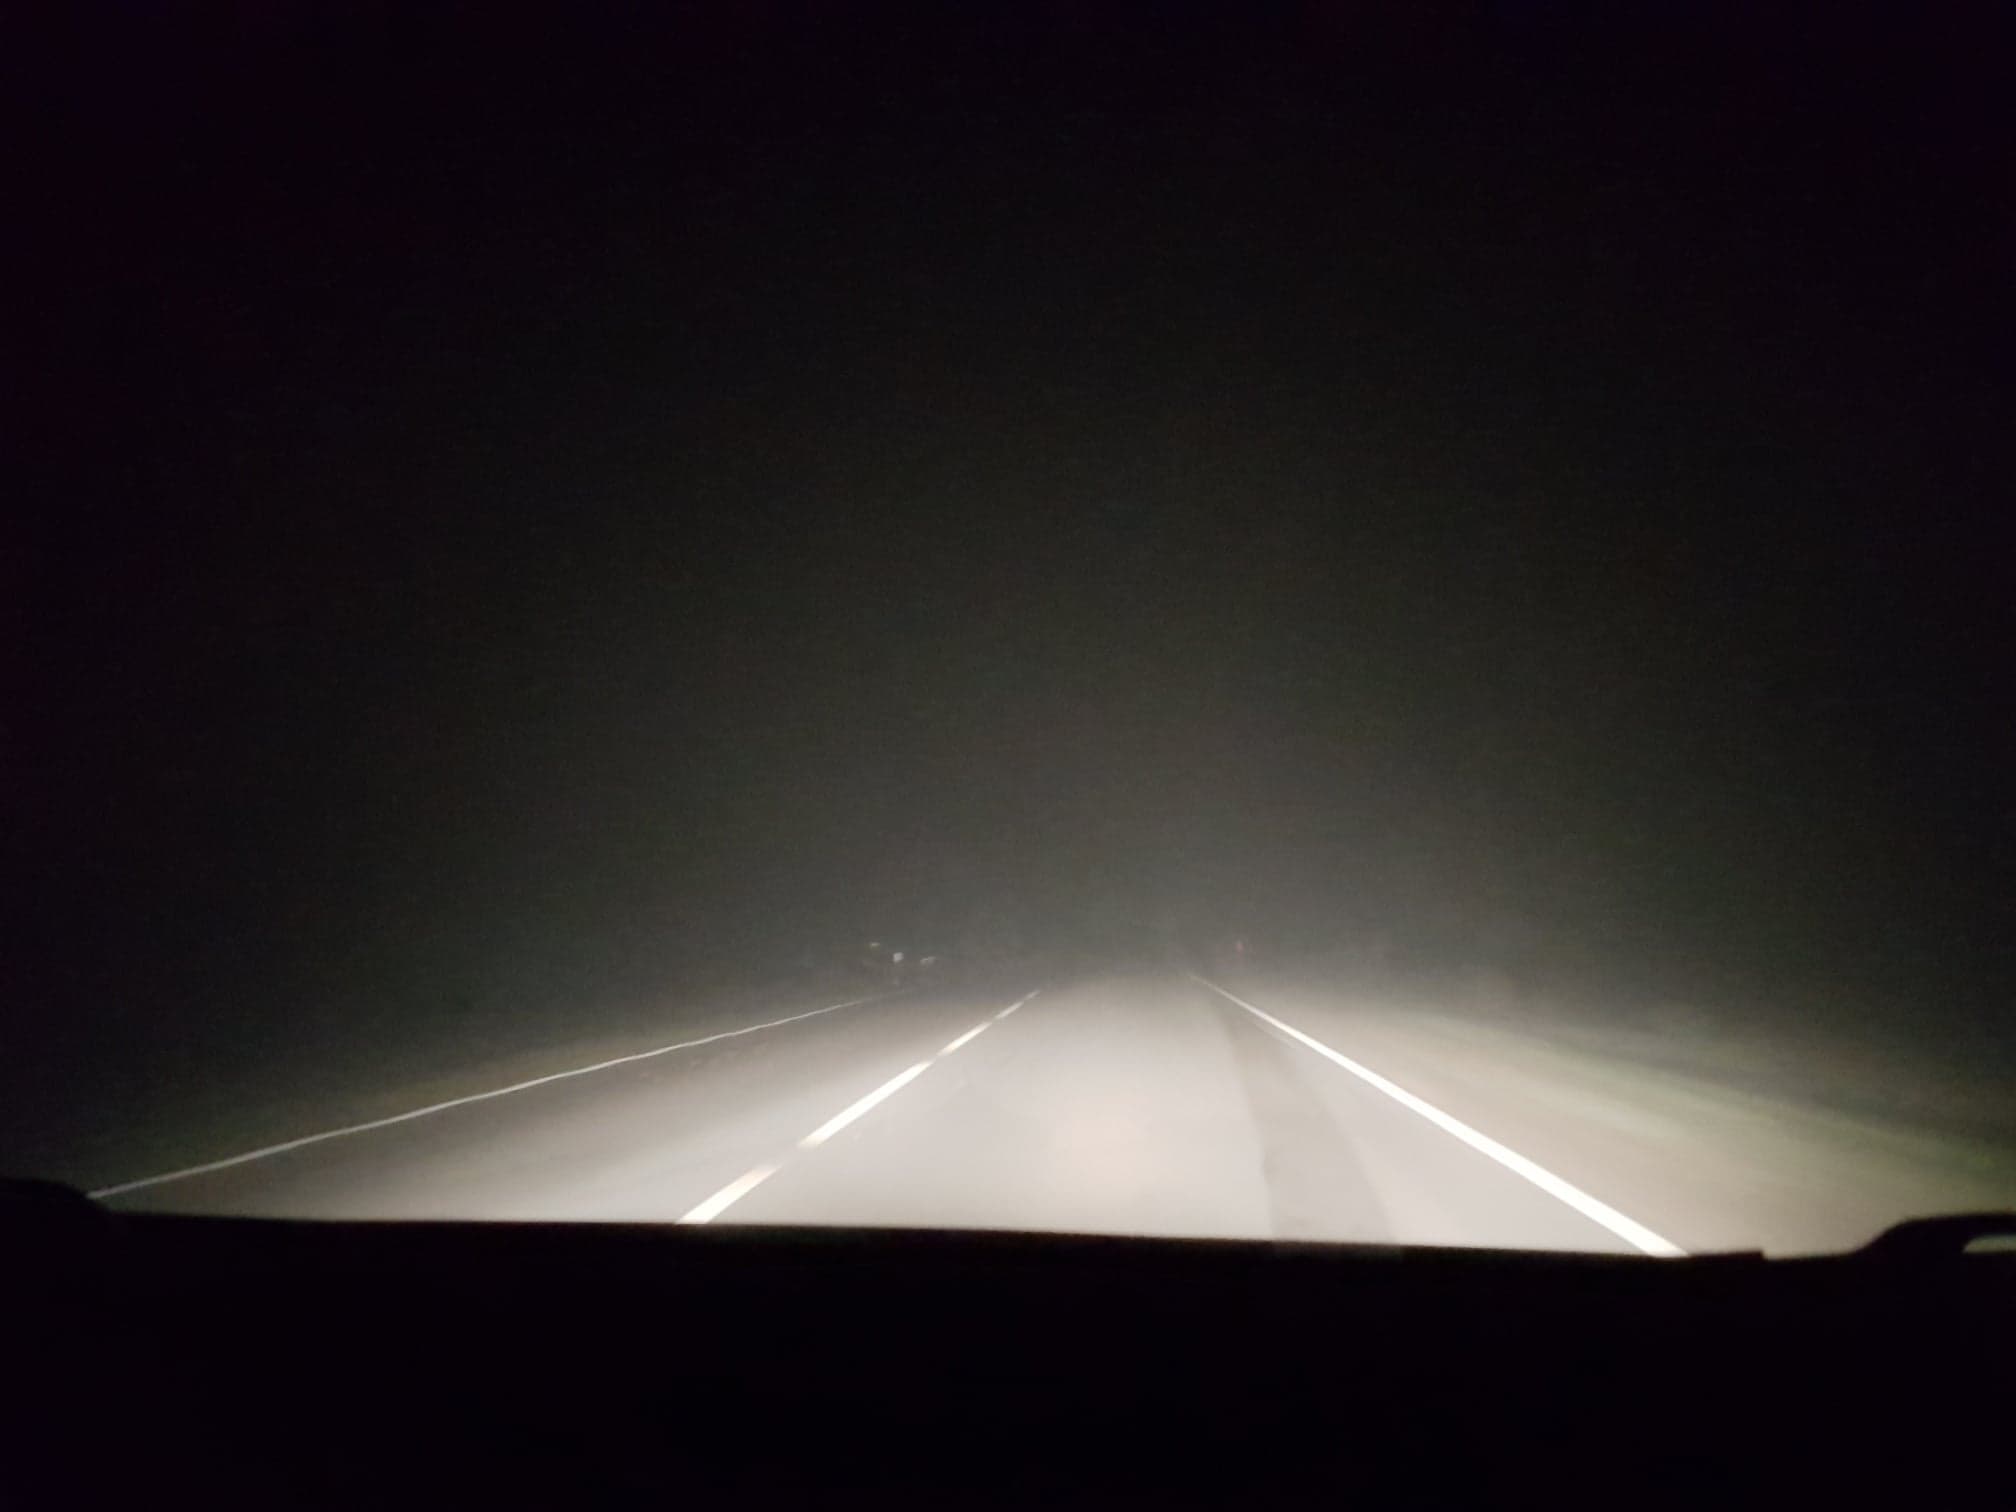 Kierowcy, uważajcie! Gęsta mgła ograniczy widoczność  - Zdjęcie główne